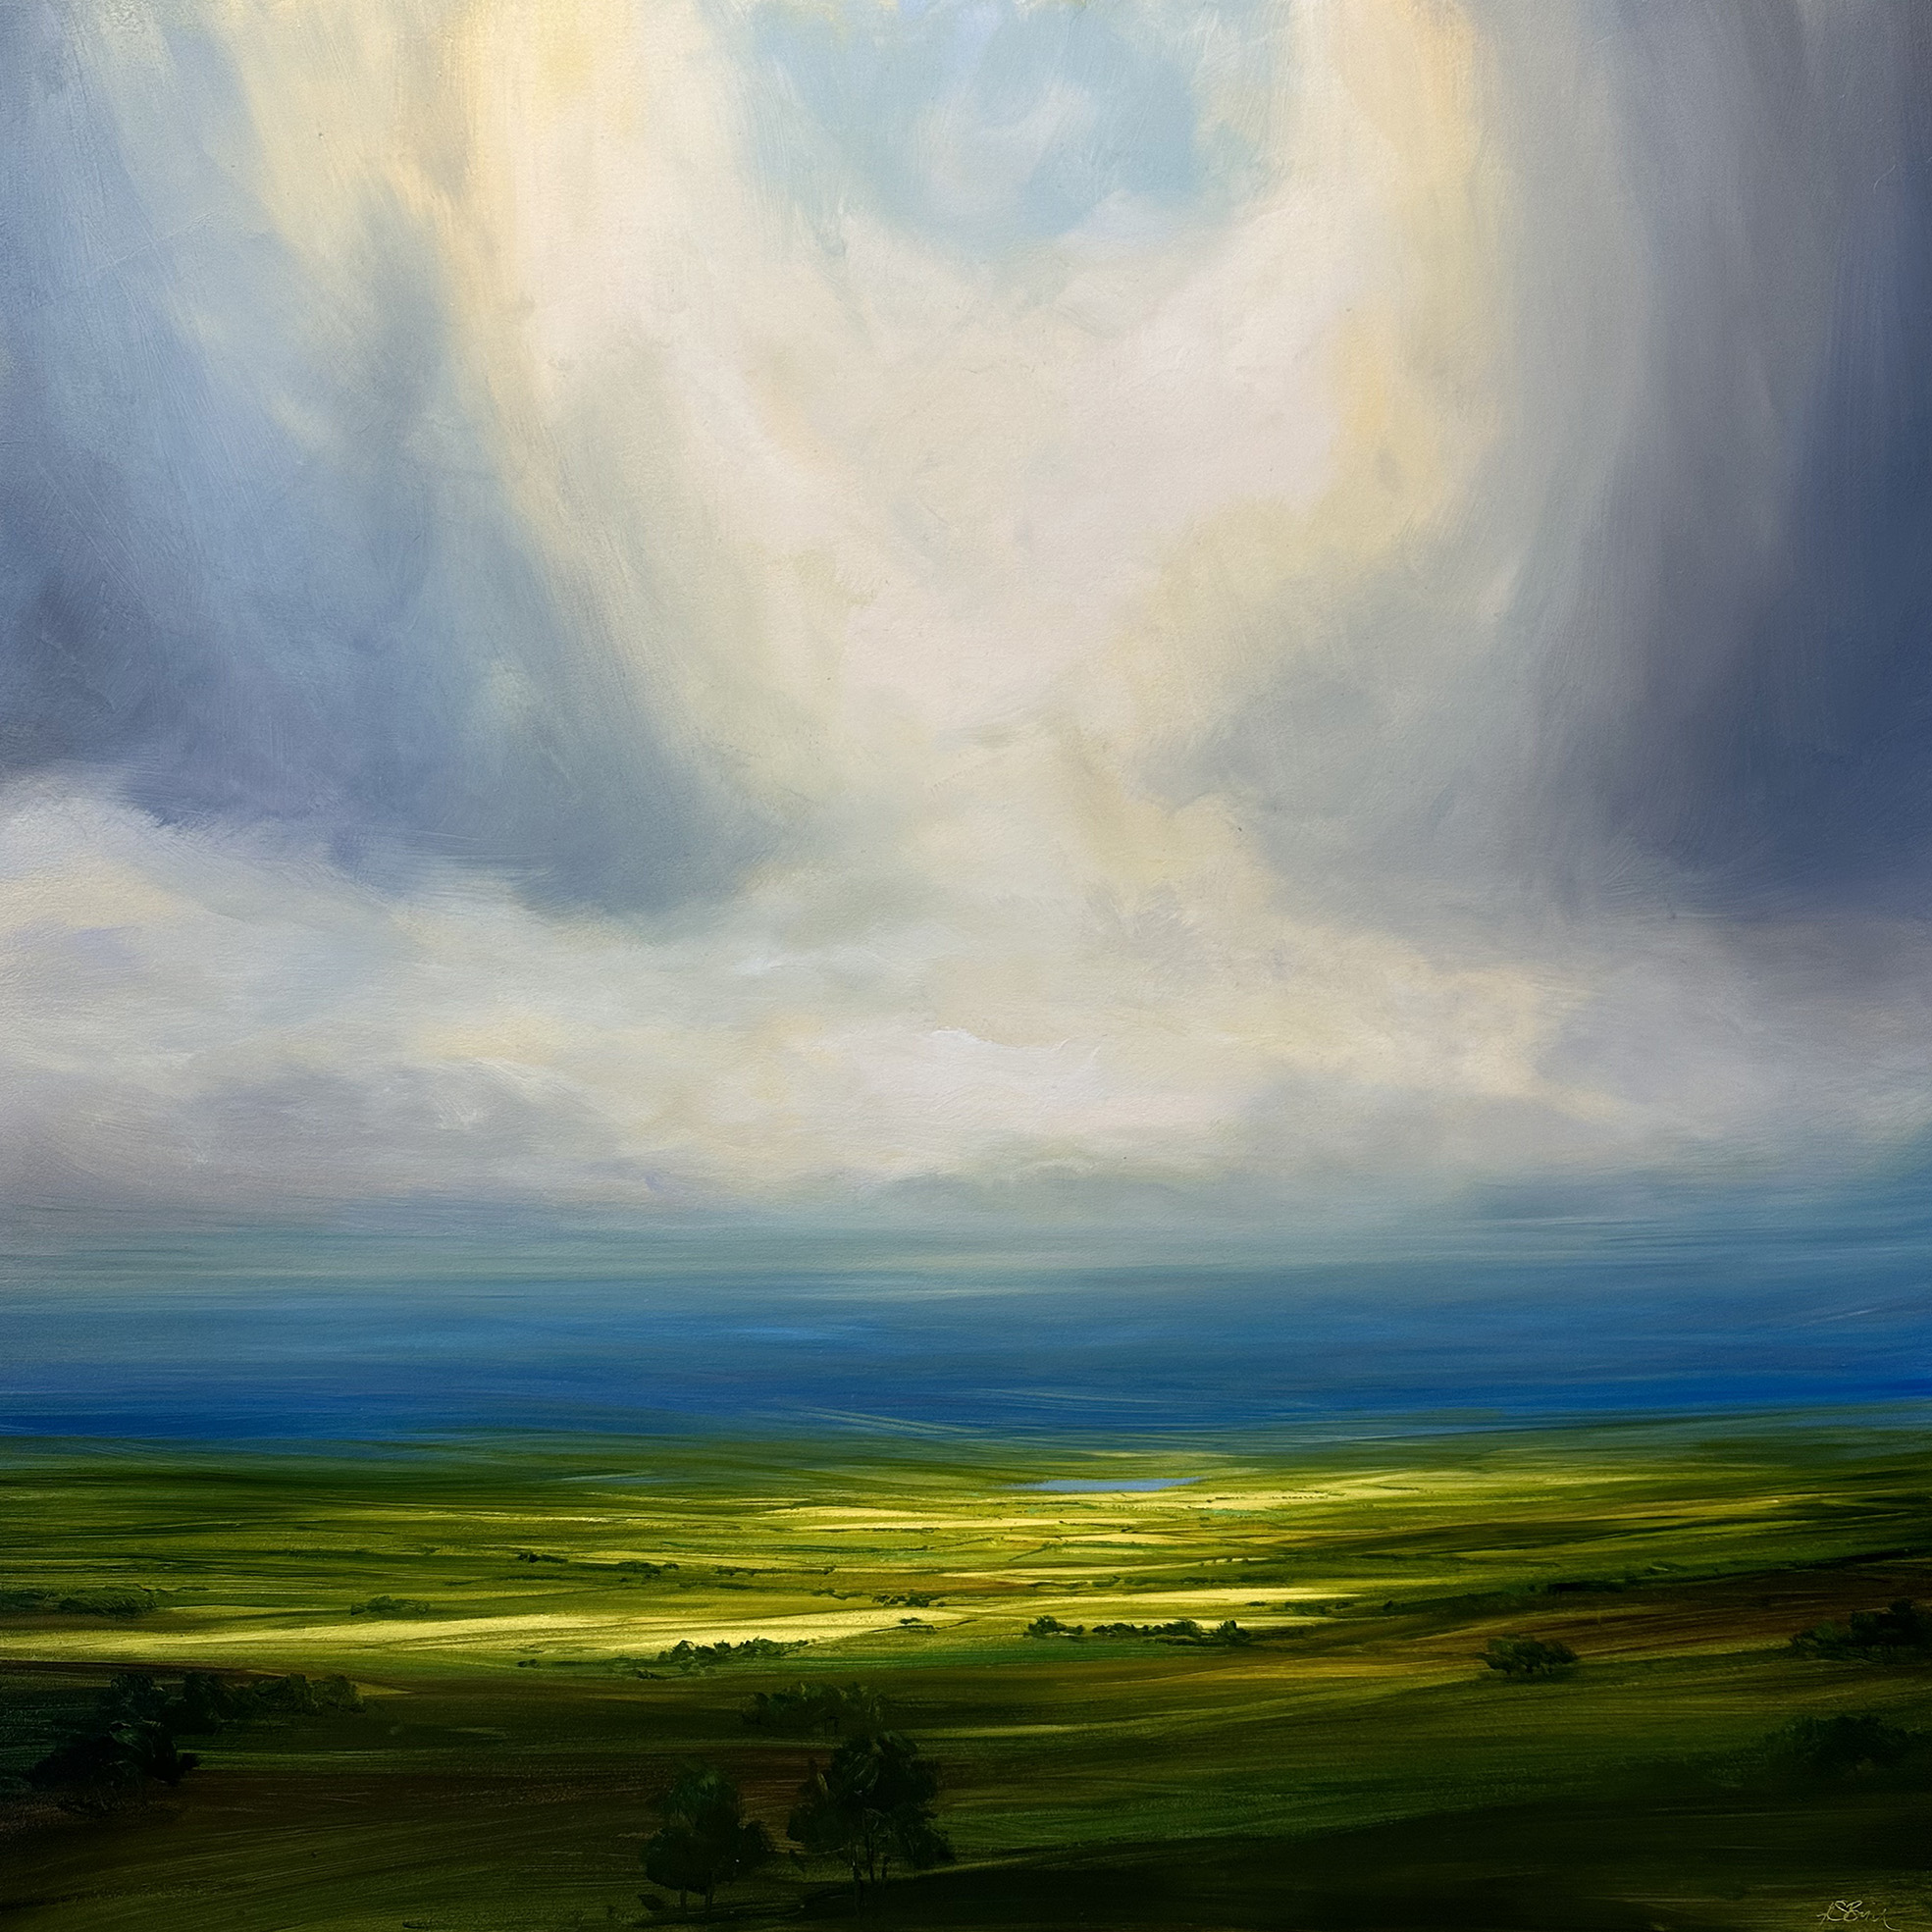 'Lost Horizon' by artist Harry Brioche